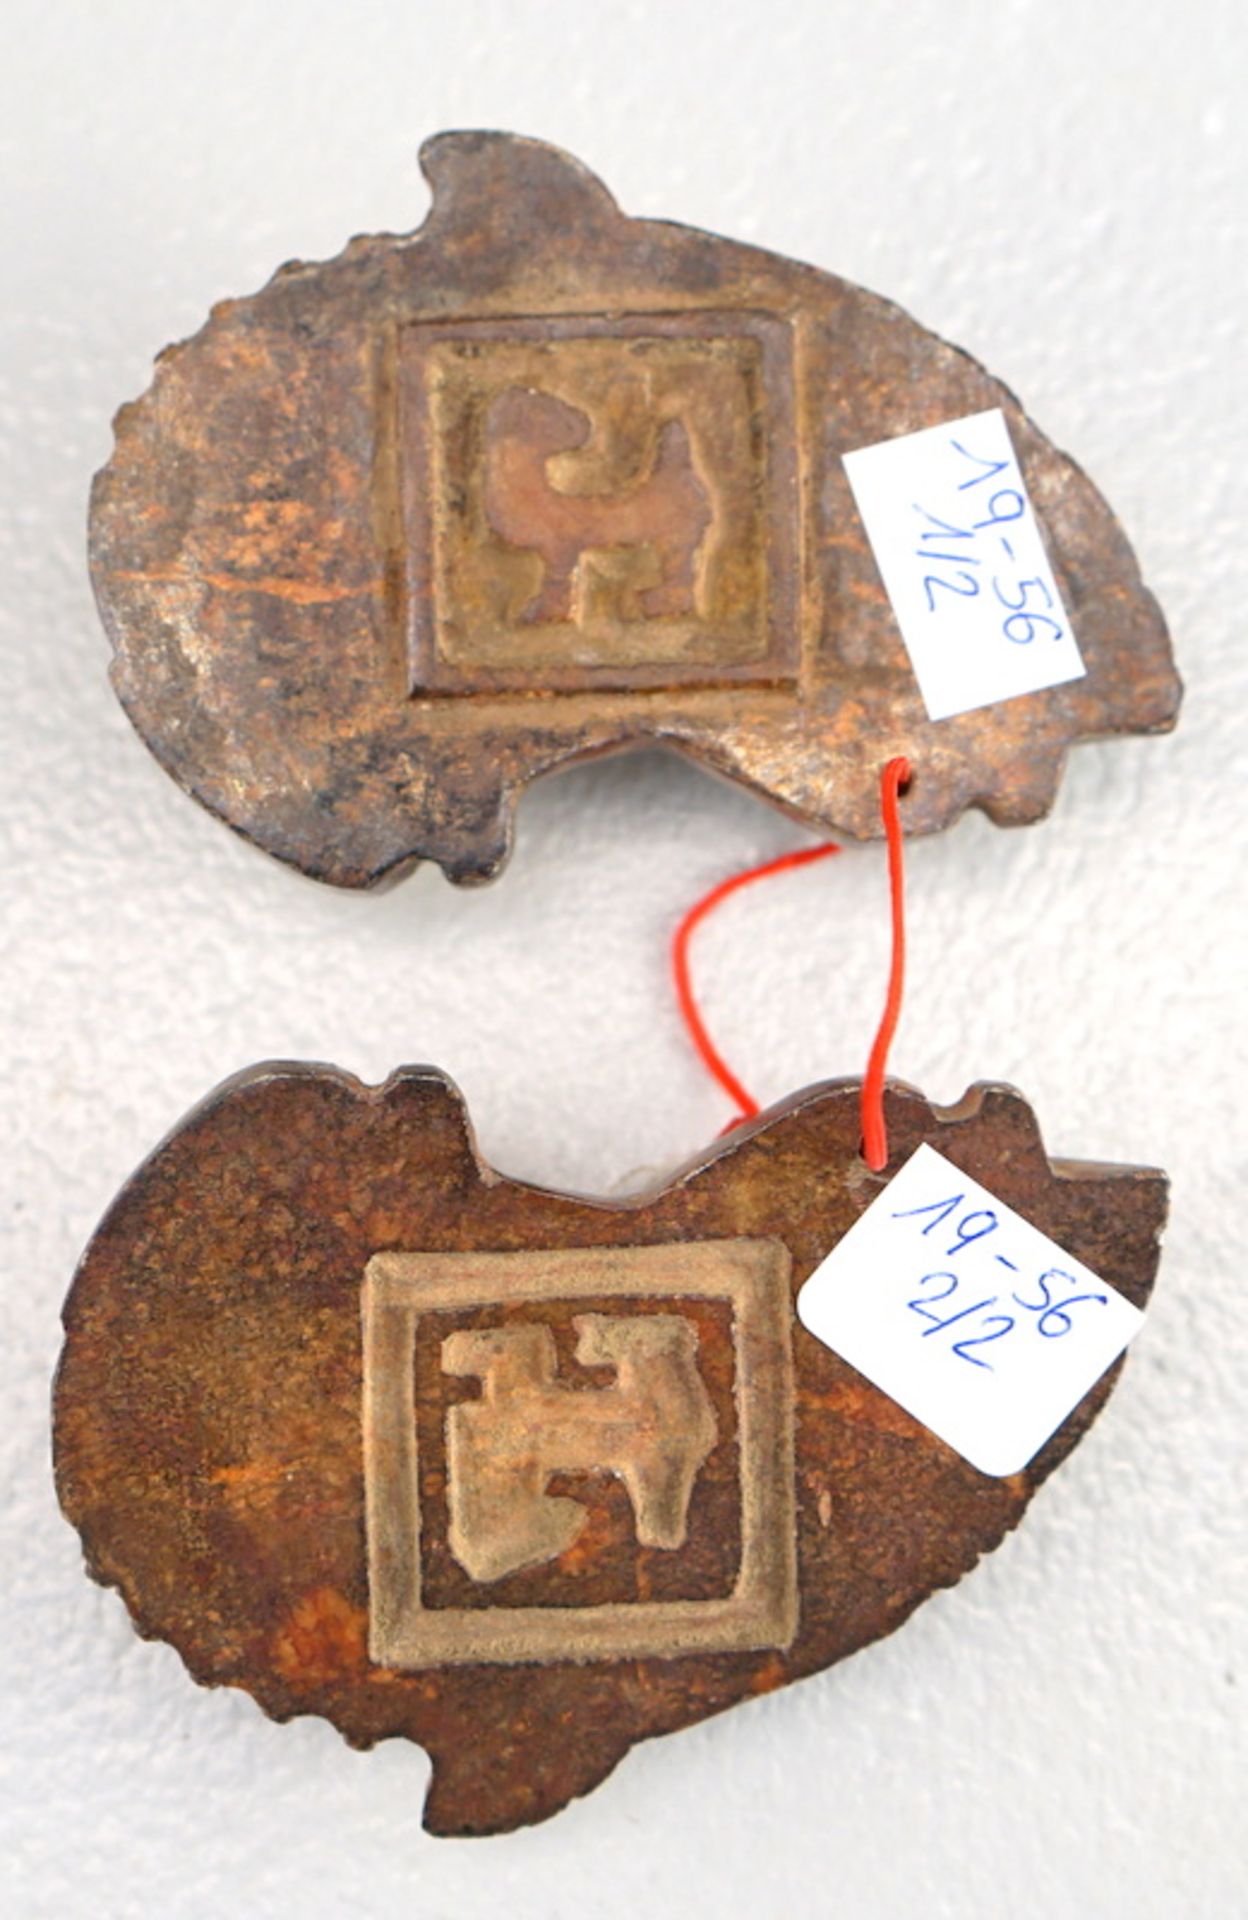 Pärchen Amulette nach archaischem Vorbild, Nephrit - Bild 2 aus 2